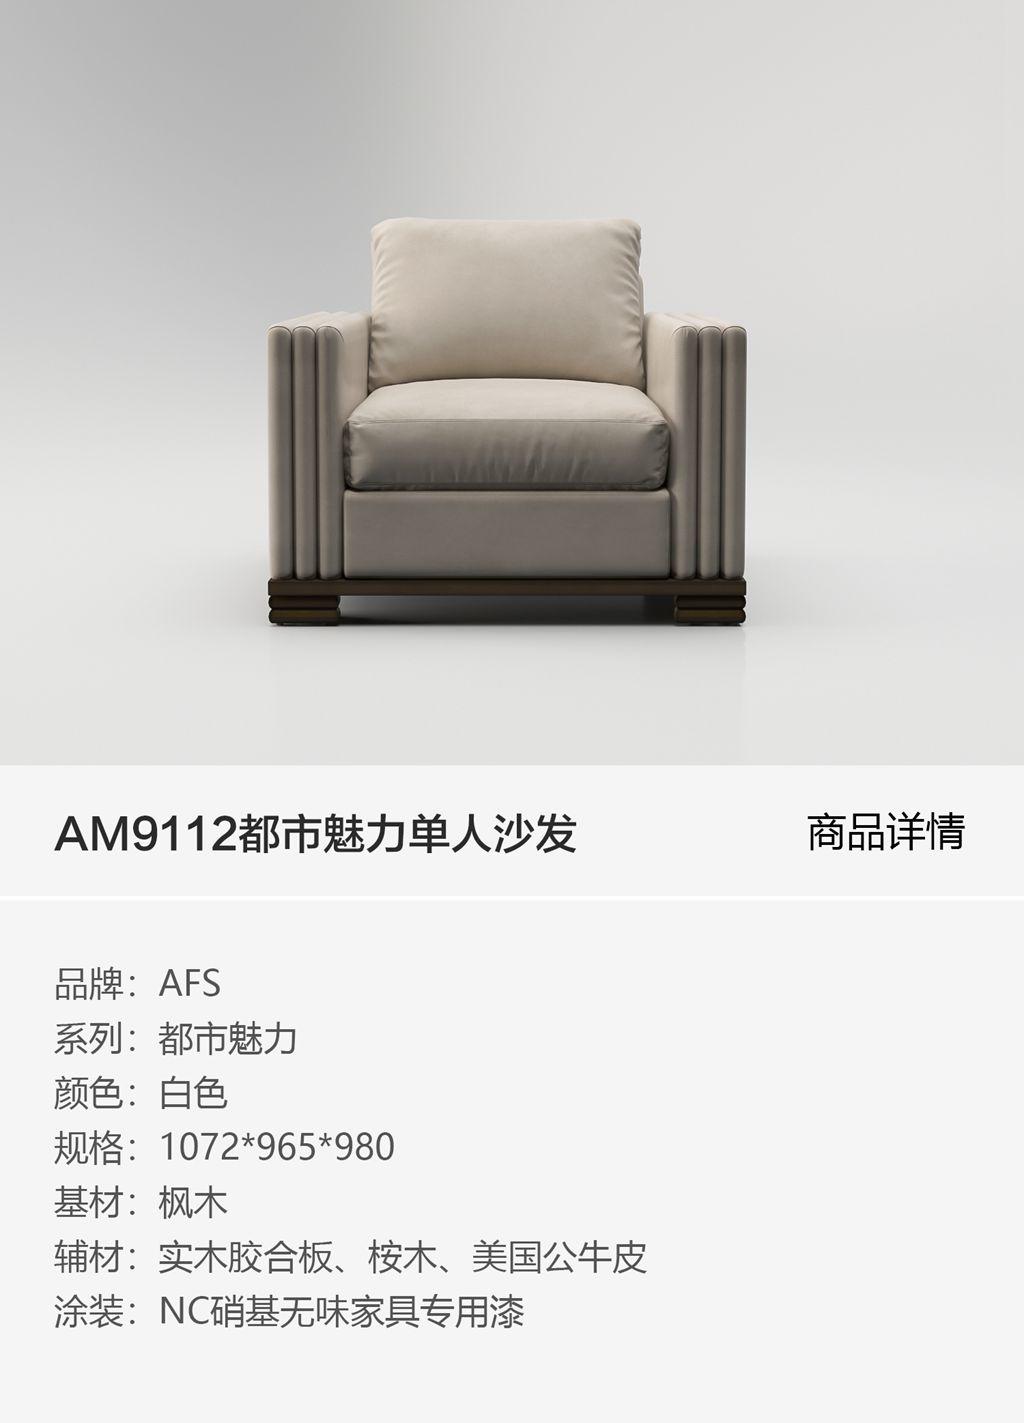 AM9112都市魅力单人沙发